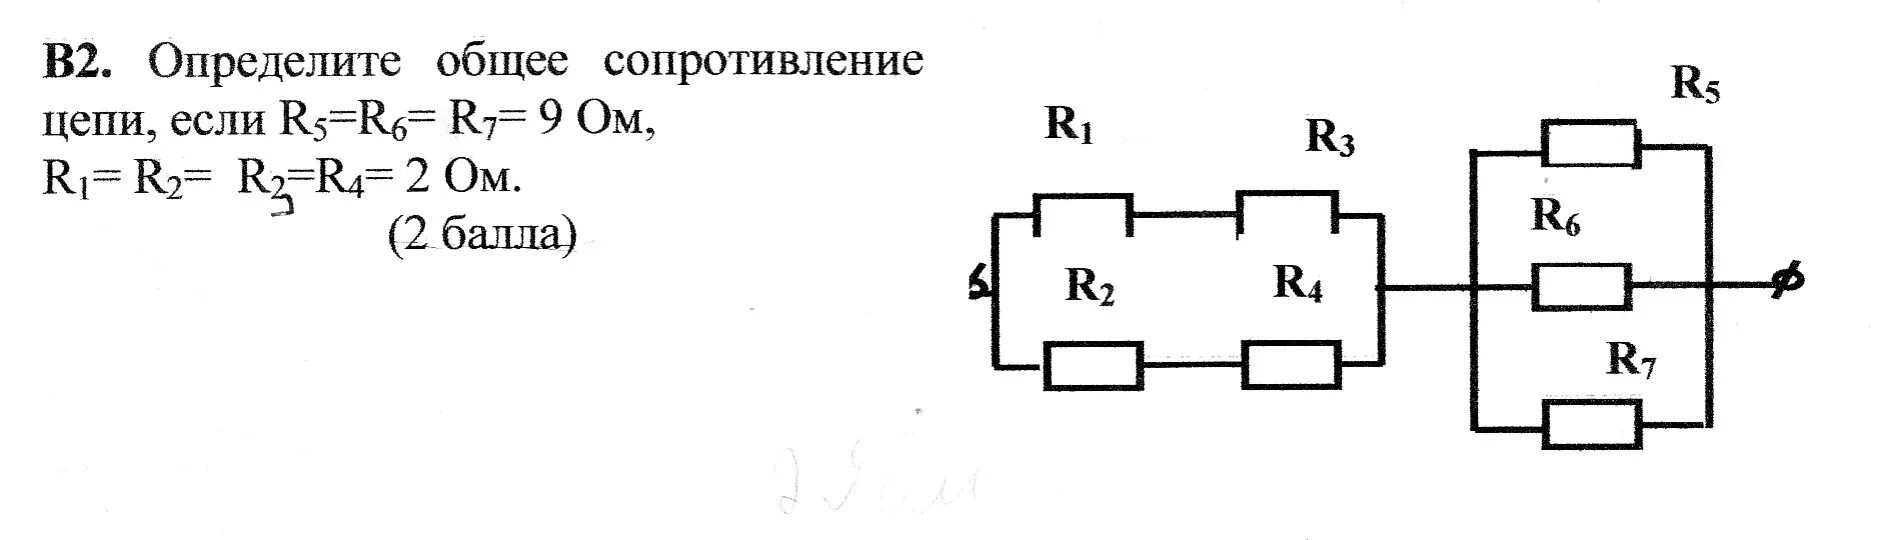 48 5 1 5 40. Определите общее сопротивление цепи если r1 3 ом r2 6. Электрическая цепь r1 r2 r3 r4. Общее сопротивление резисторов r1 и r 2 ом. Электрическая цепь r1 r2 r3 r4 r5 r6.